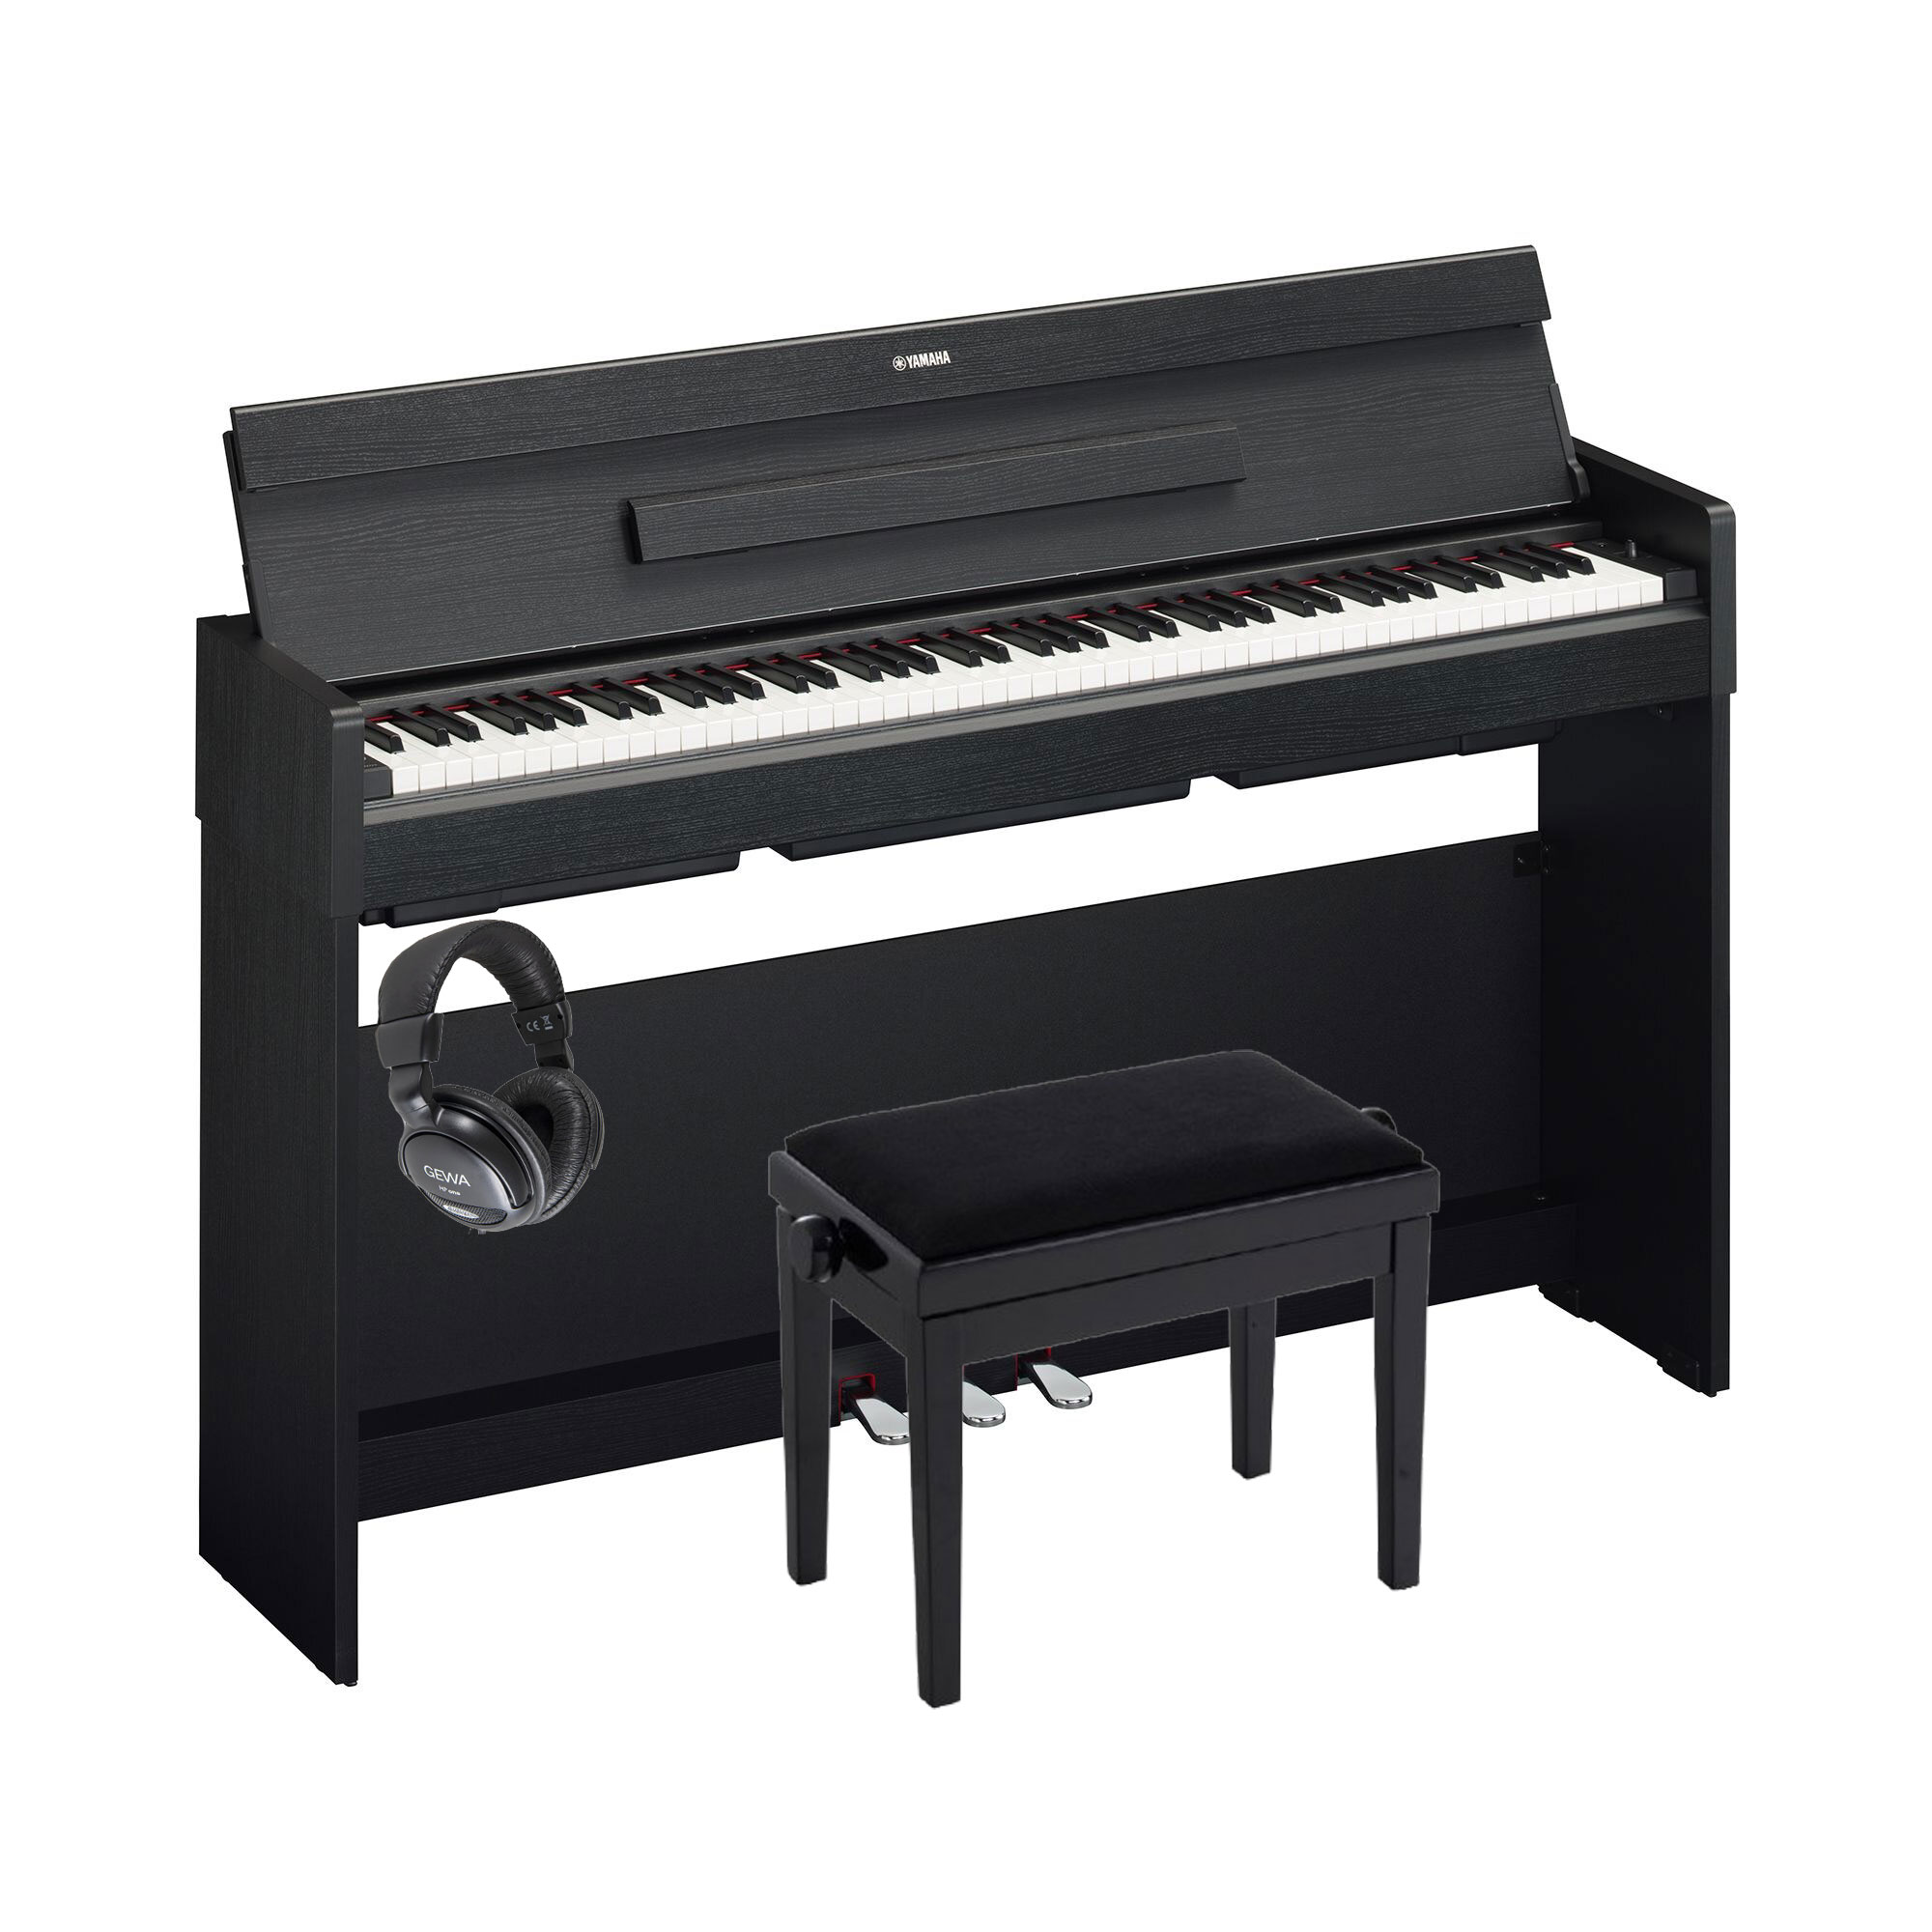 Pack piano Digital Yamaha Arius YDP-S35 con banqueta y auriculares